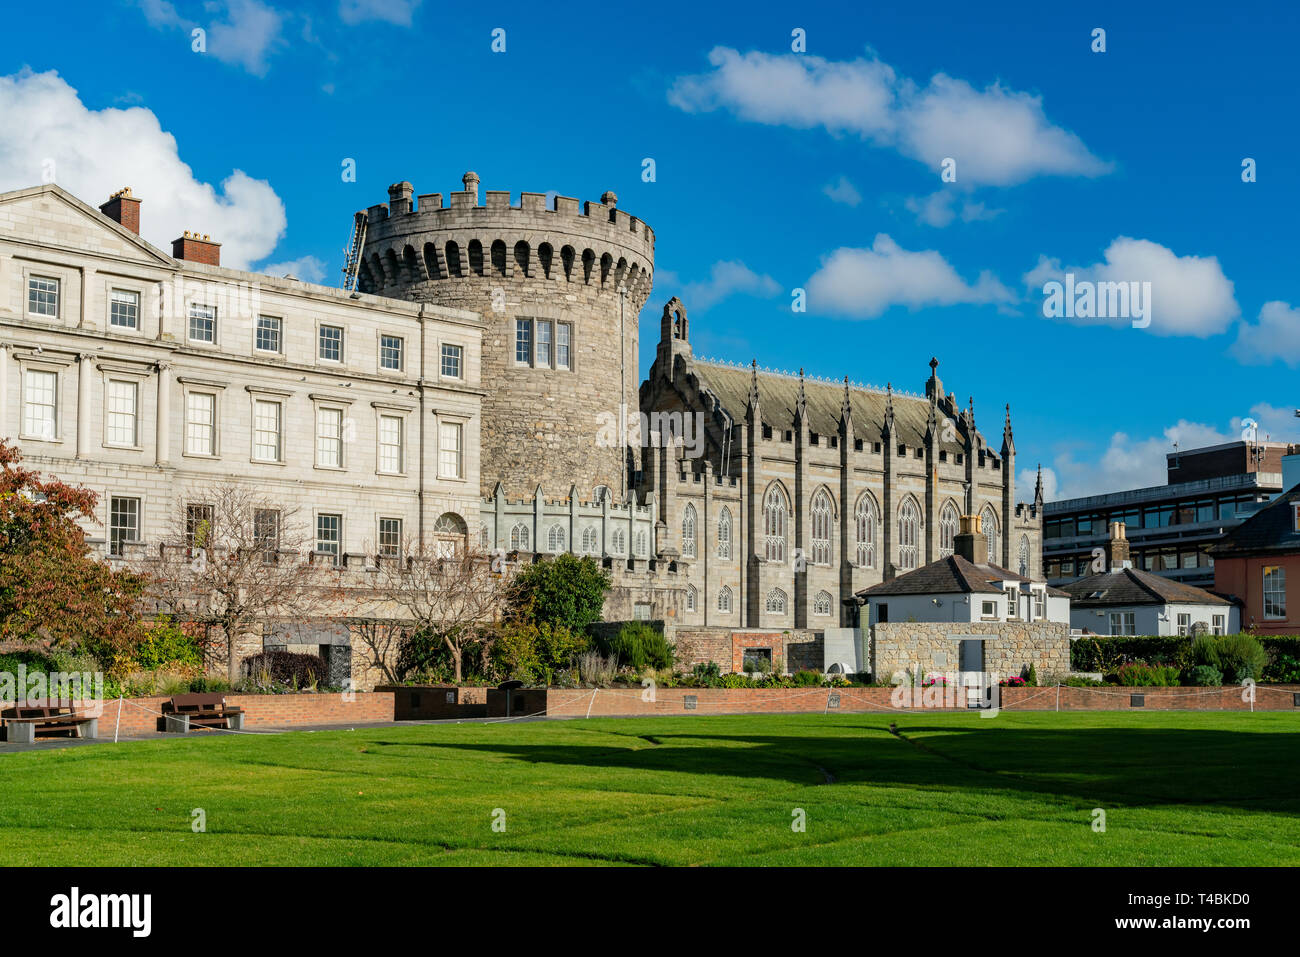 Vue extérieure de l'historique château de Dublin à Dame Street, Dublin, Irlande Banque D'Images